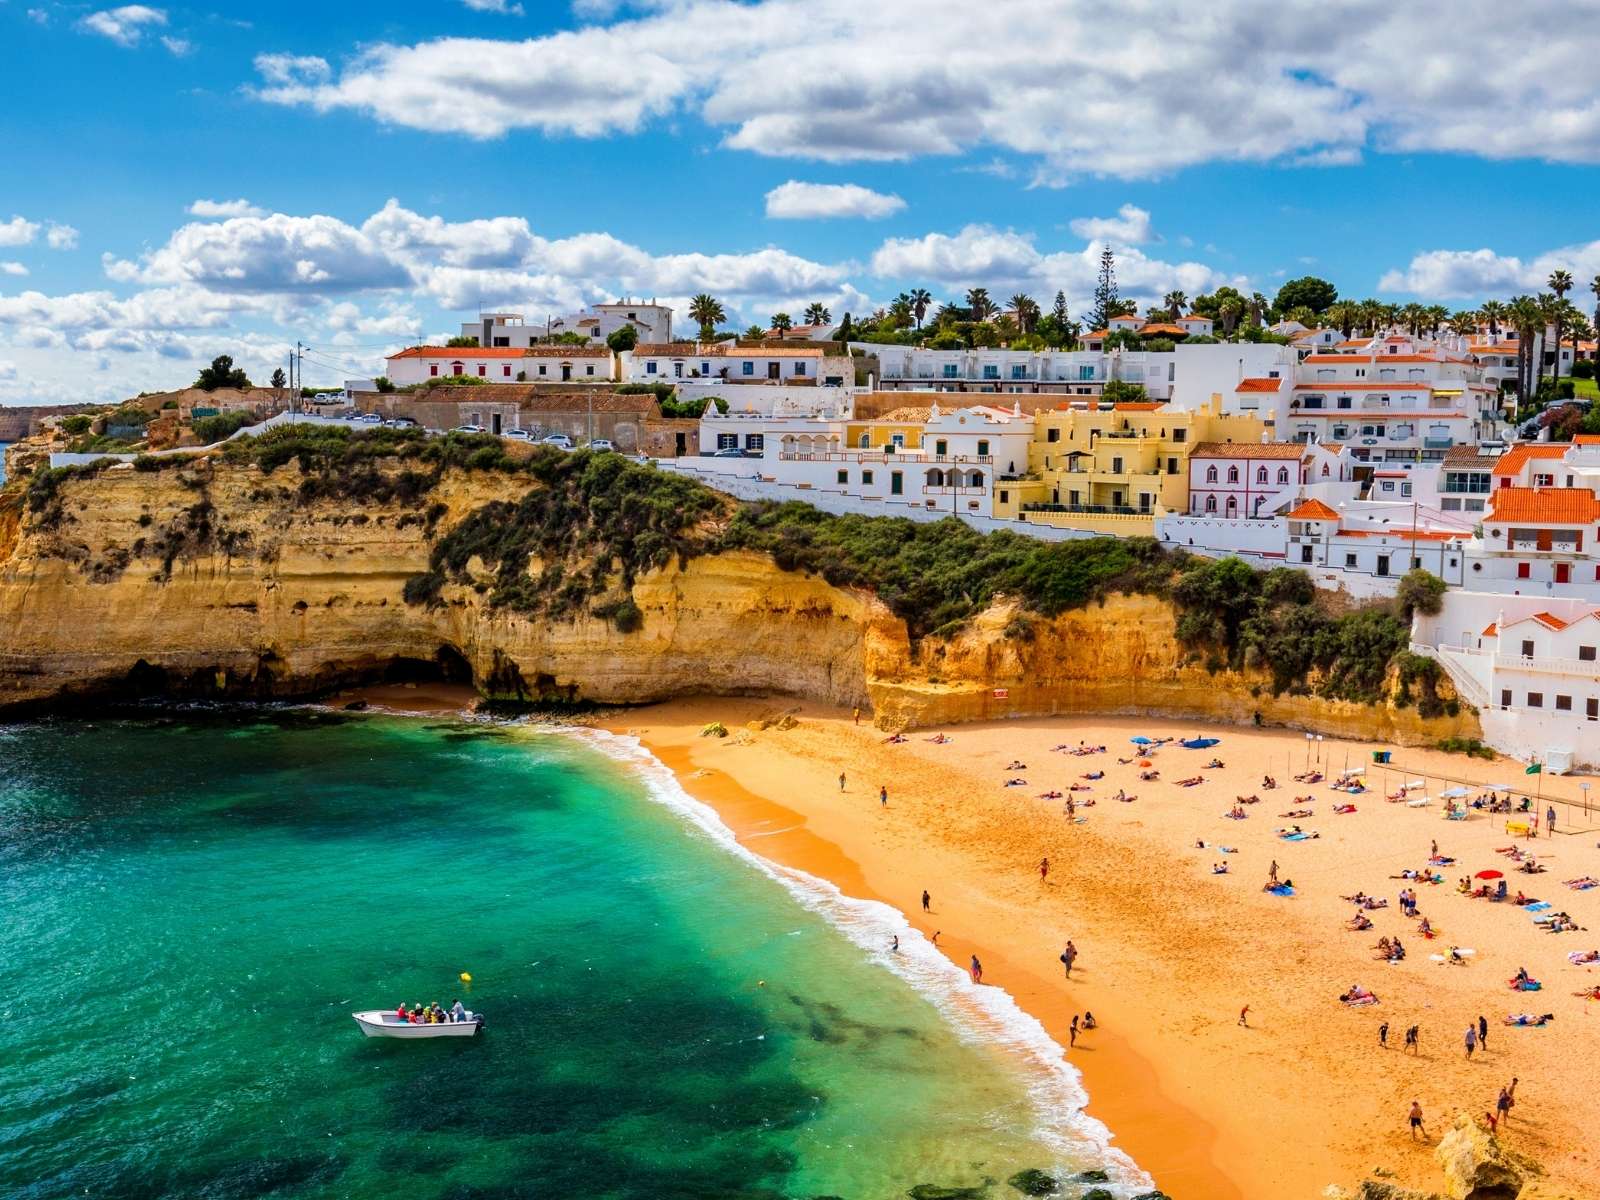 Urlaub in Portugal: Das Musst Du Gesehen Haben